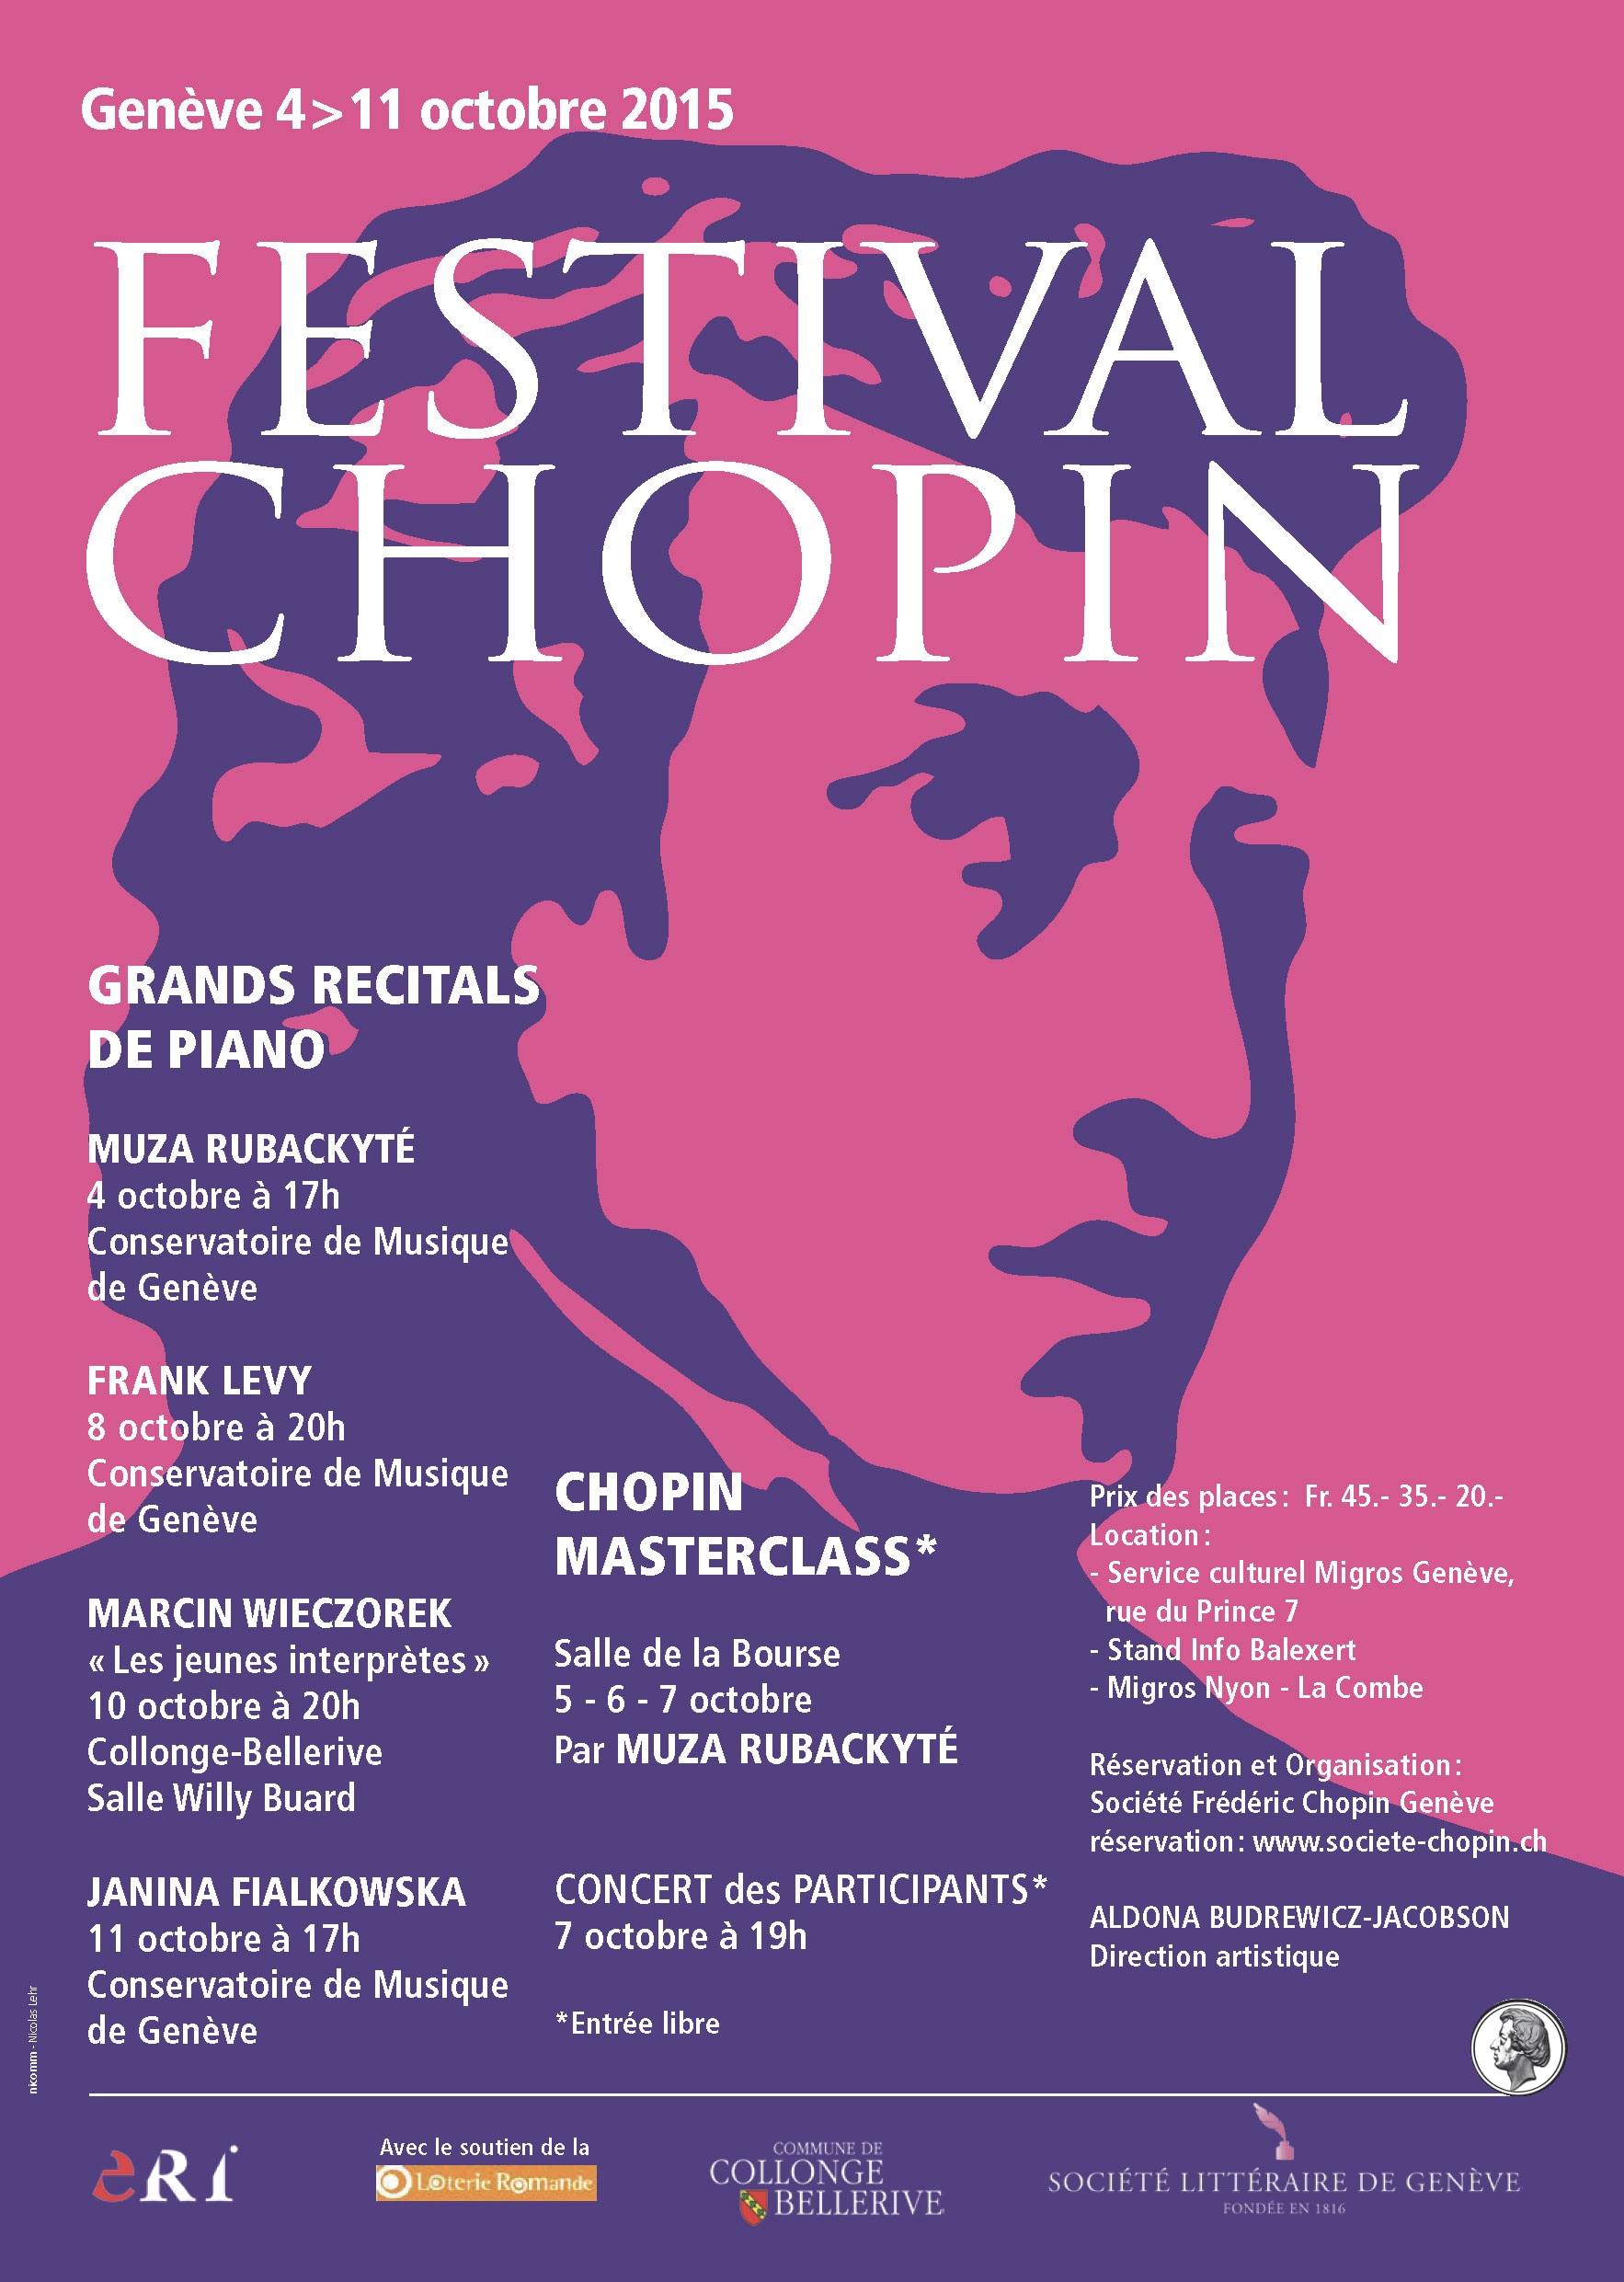 Festiwal Chopinowski w Genewie 2015